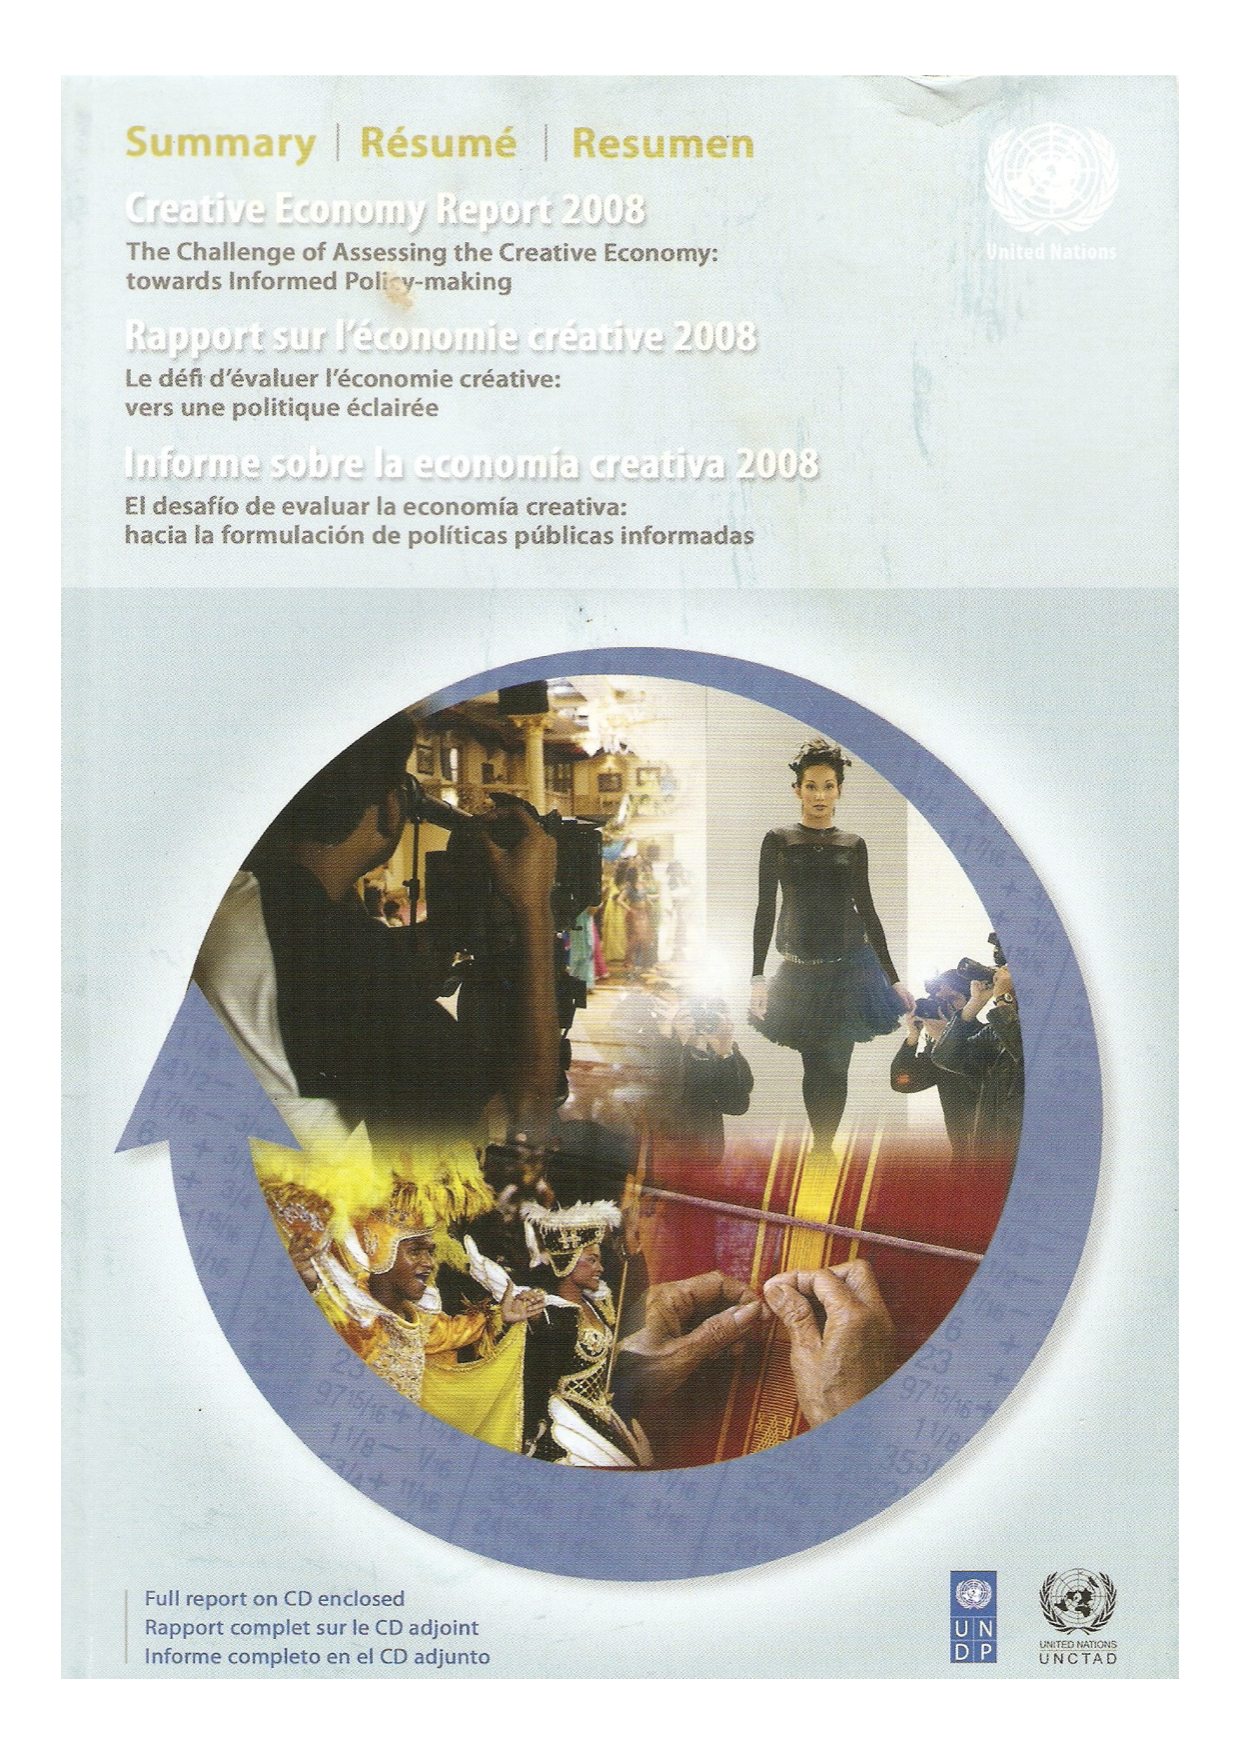 Creative Economy Report 2008